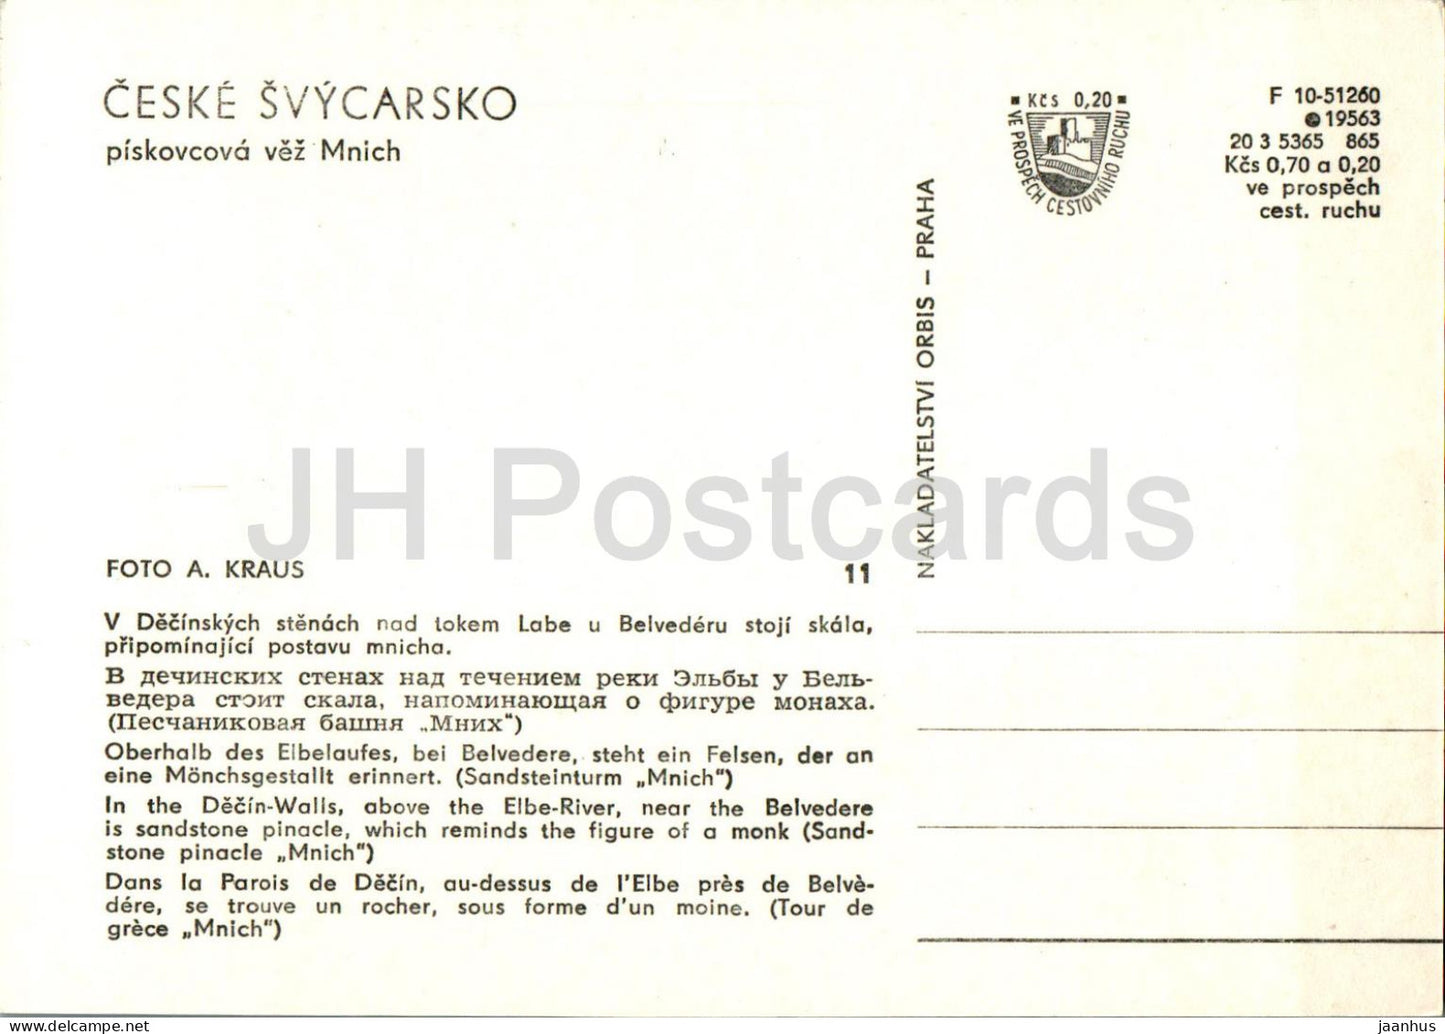 Ceske Svycarsko - Decin Walls - Sandstone Pinacle Mnich - monk - 11 - Czech Repubic - Czechoslovakia - unused